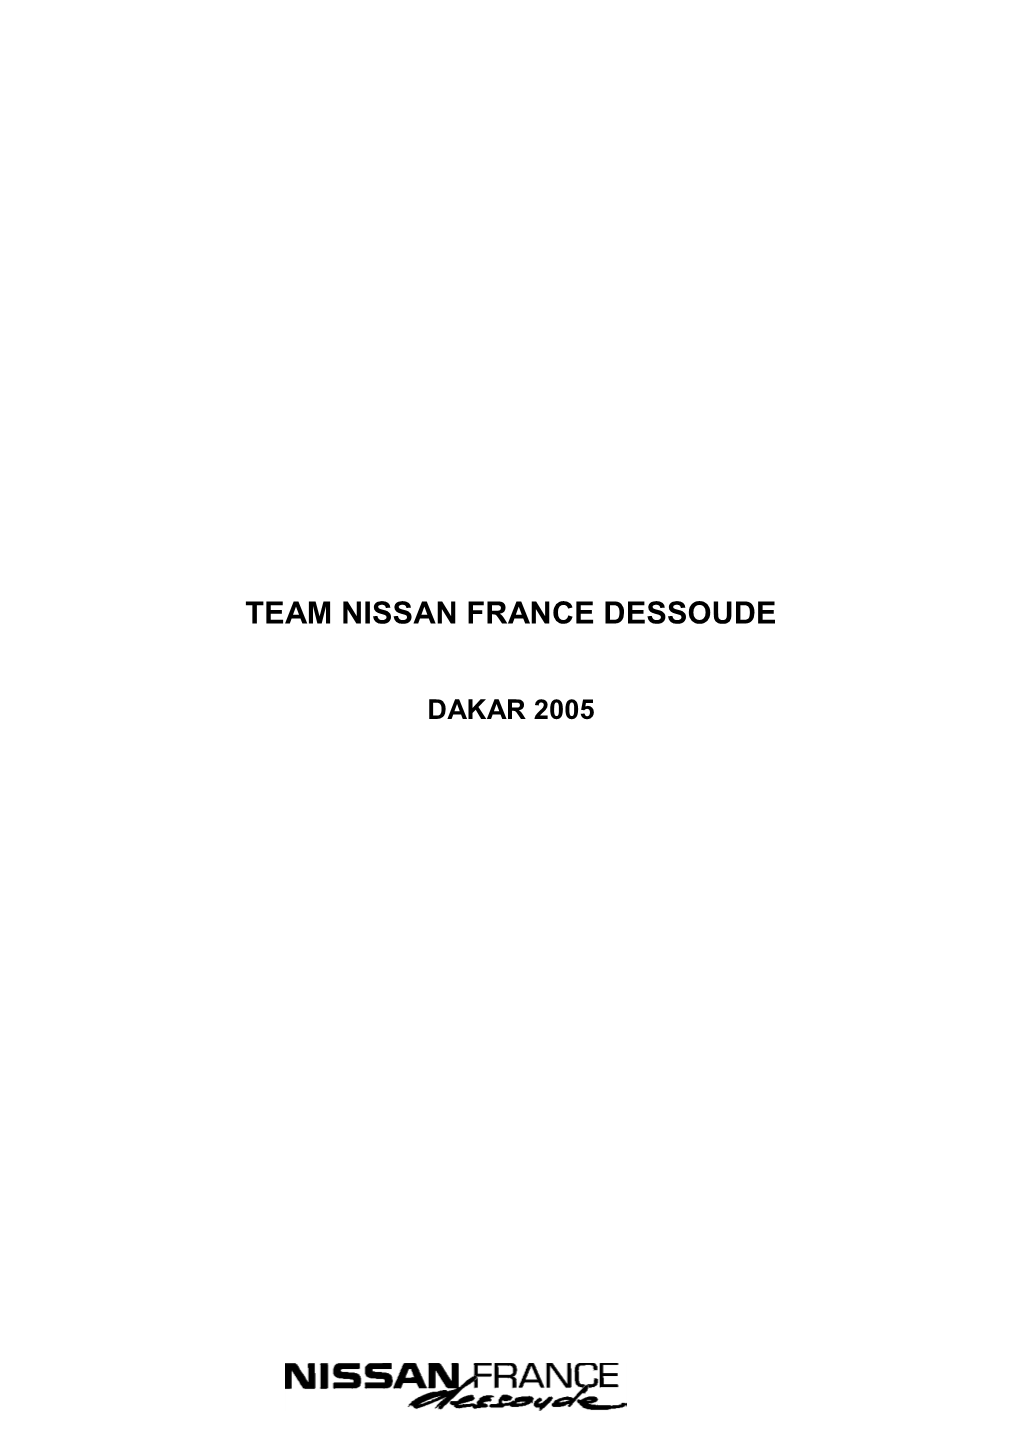 Team Nissan France Dessoude